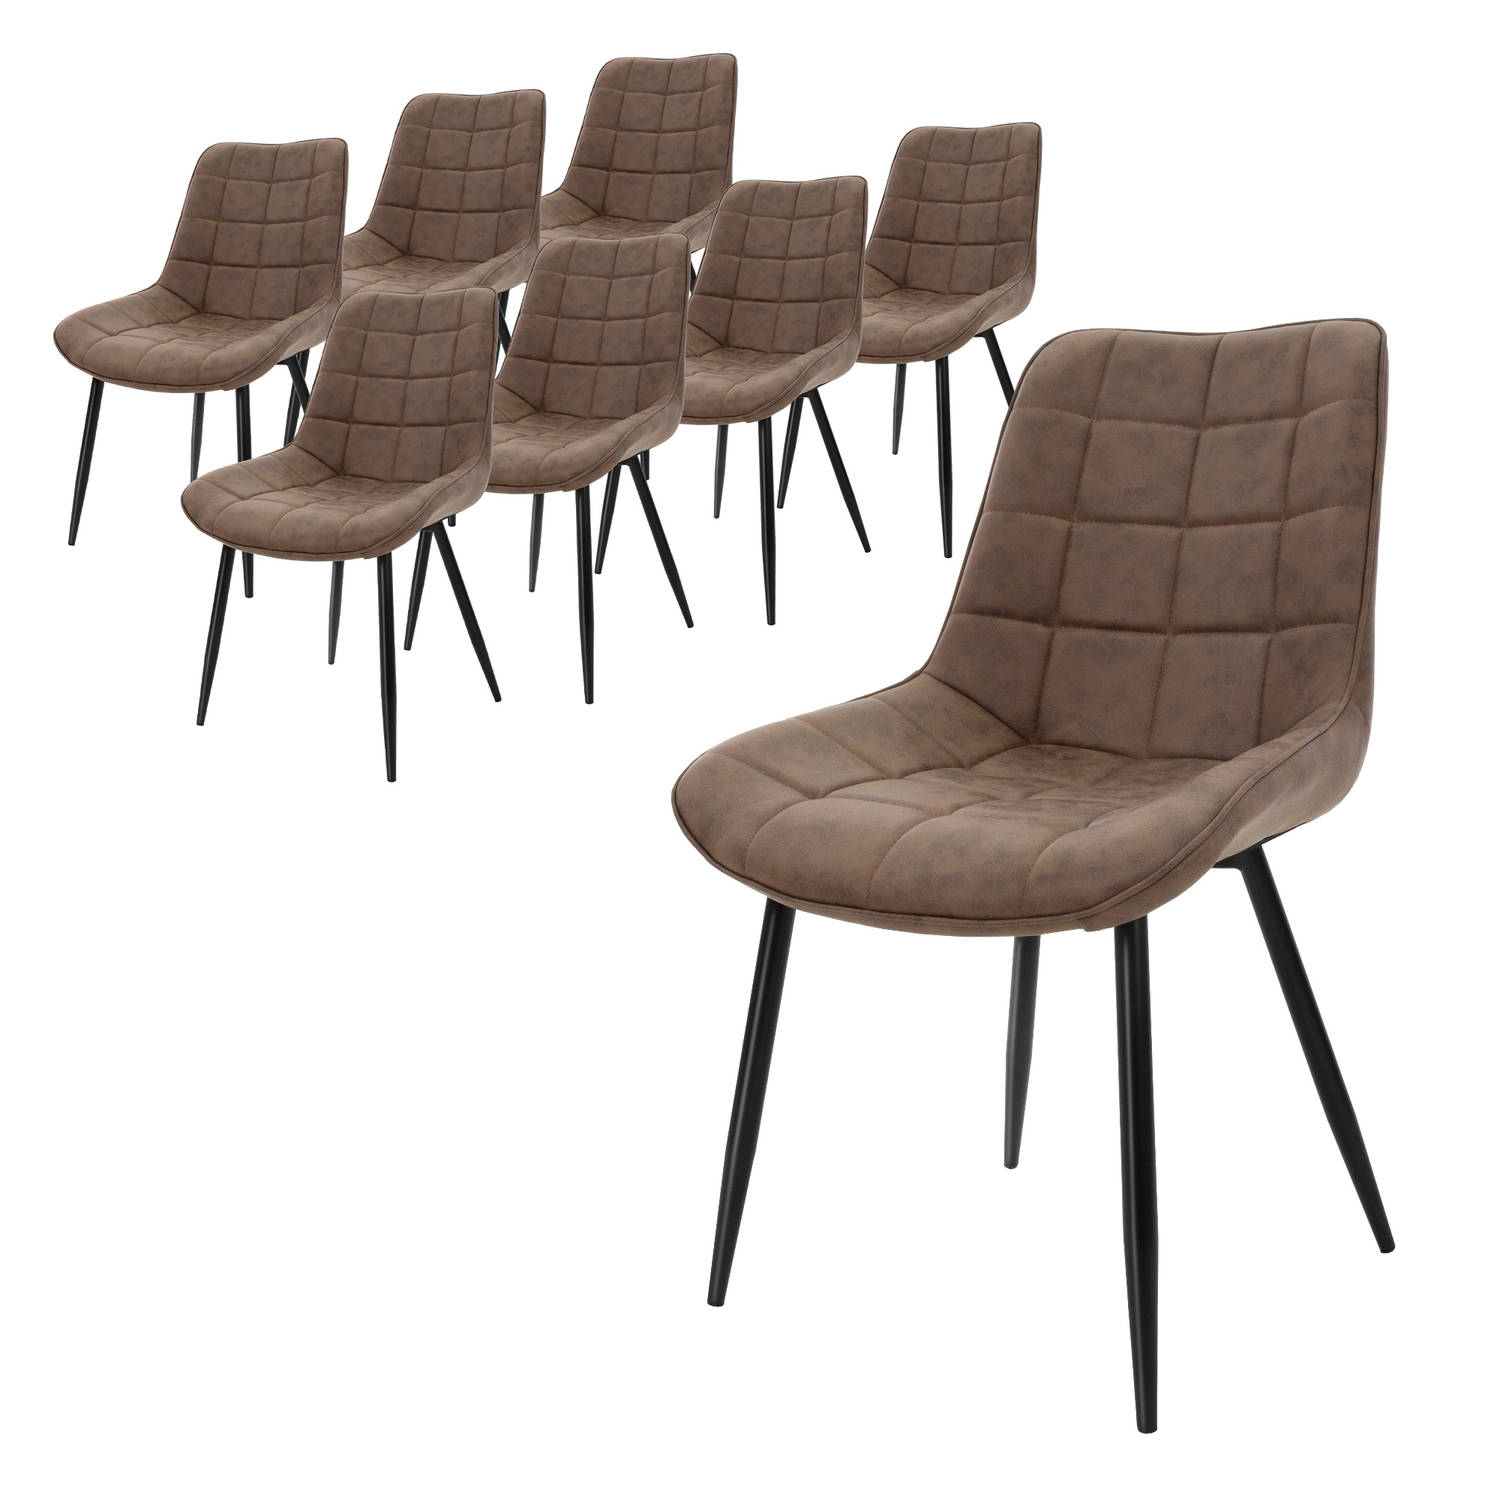 ML-Design Set van 8 eetkamerstoelen met rugleuning, bruin, keukenstoel met kunstleren bekleding, gestoffeerde stoel met metalen poten, ergonomische eettafelstoel, woonkamerstoel ke